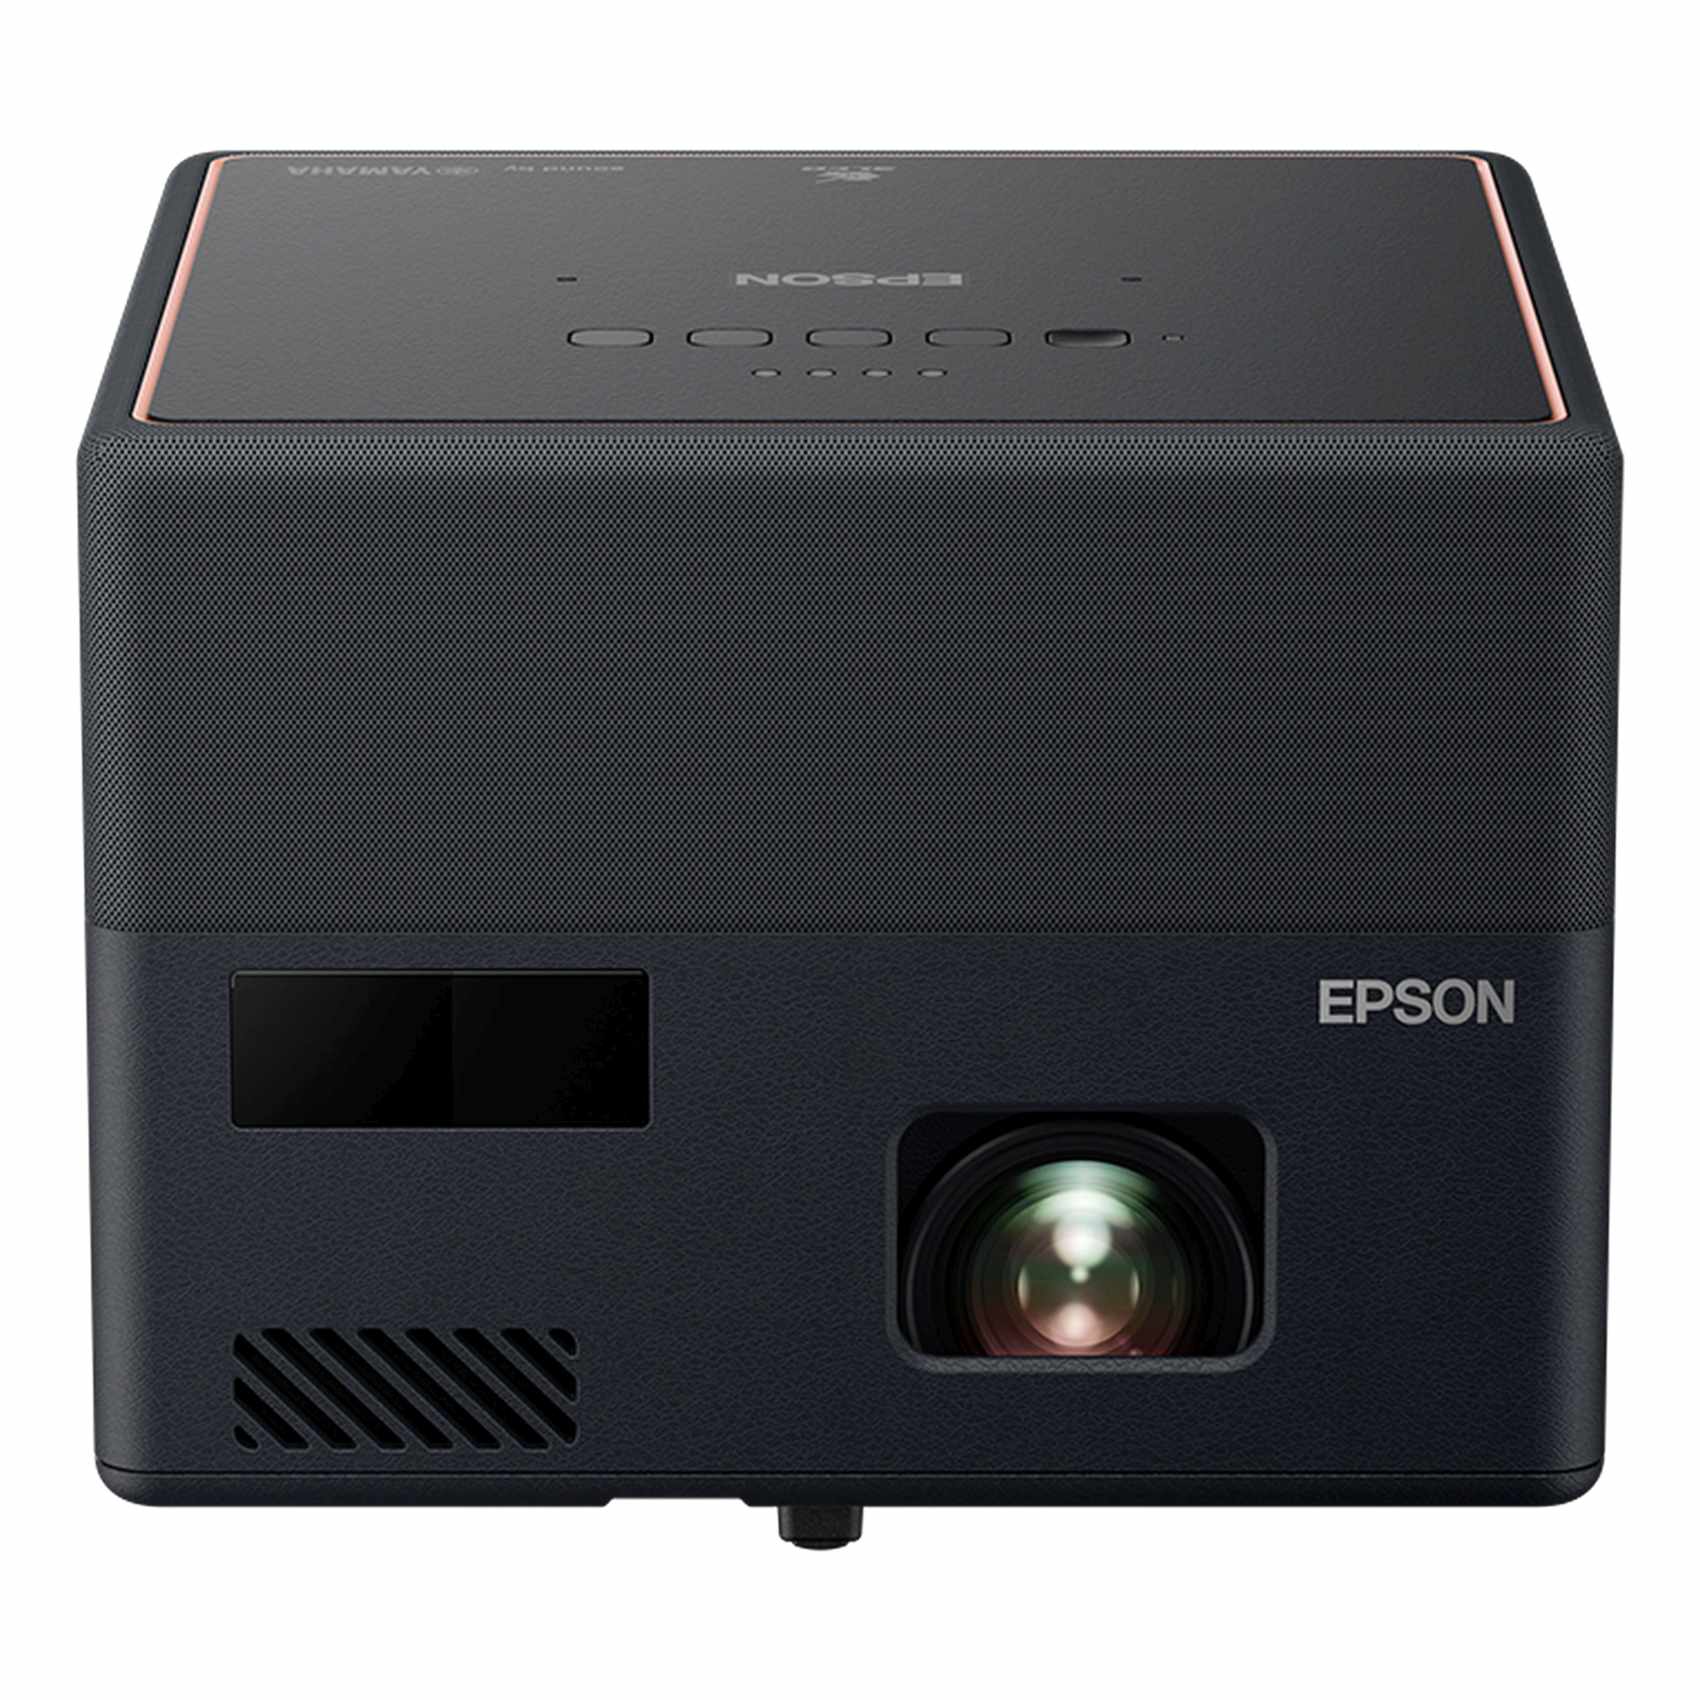 إبسون EpiqVision ميني EF-12 جهاز عرض ليزر عالي الدقة 1000 لومن أسود